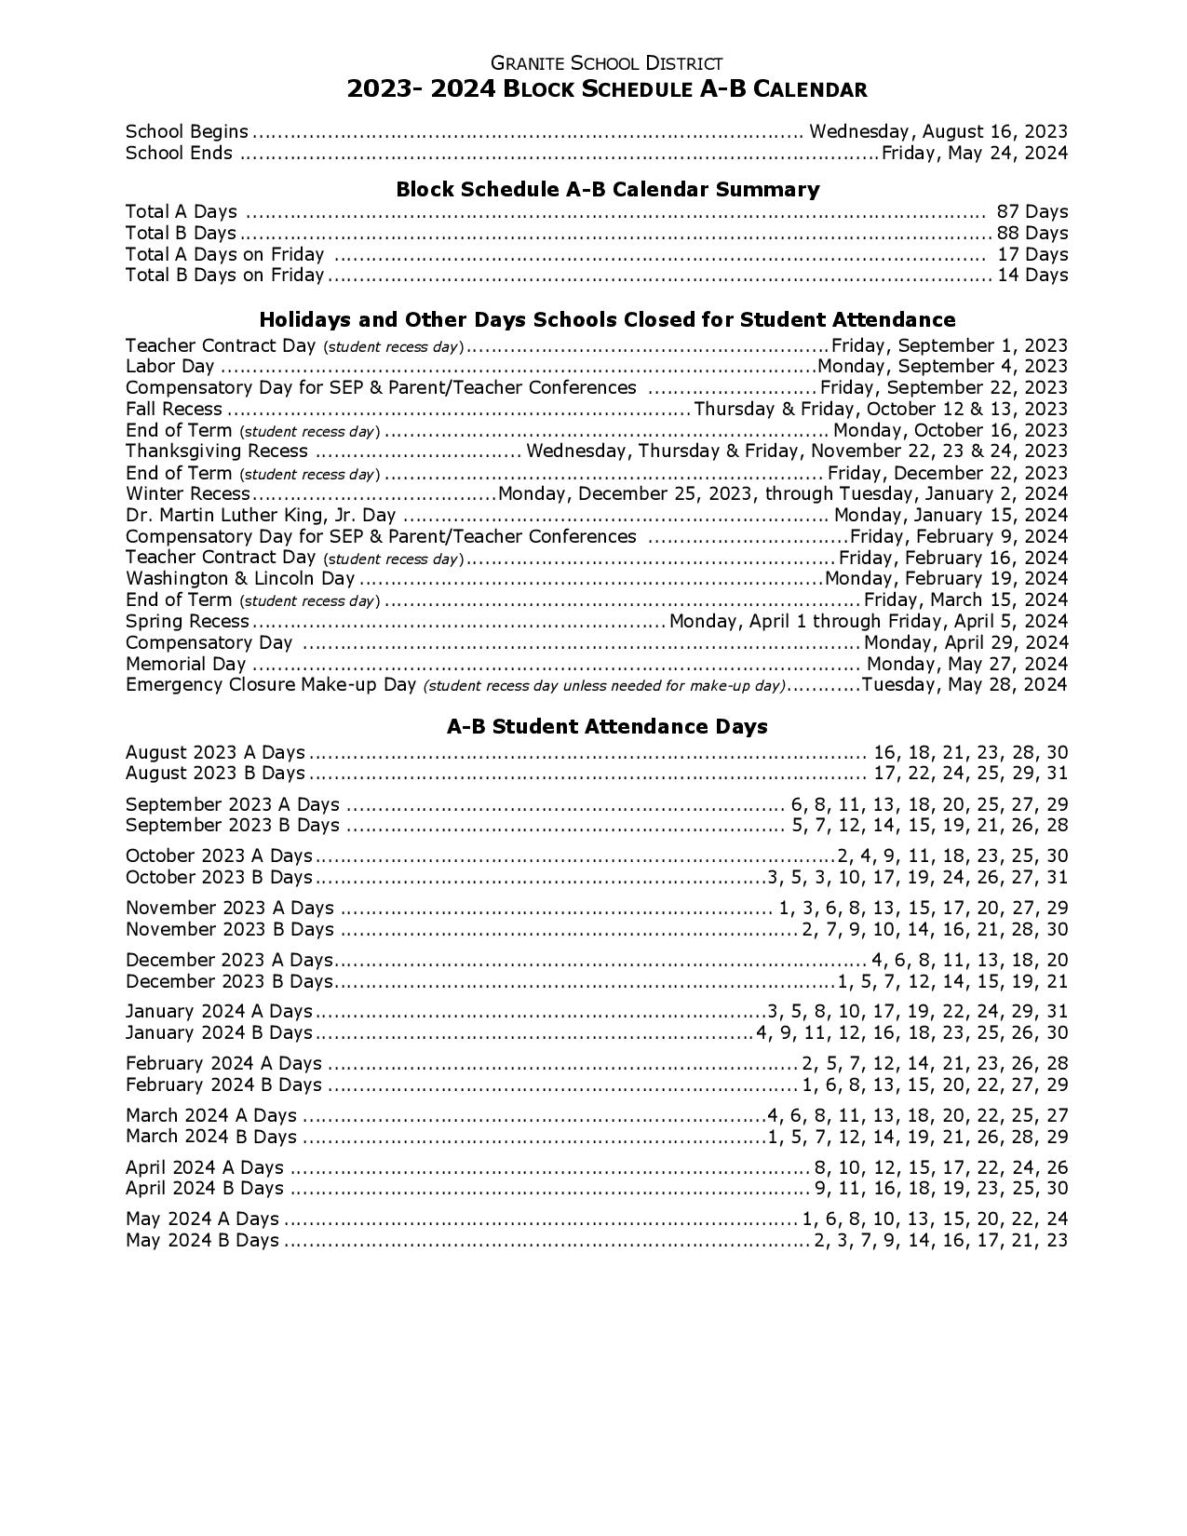 Granite School District Calendar 2023-2024 in PDF